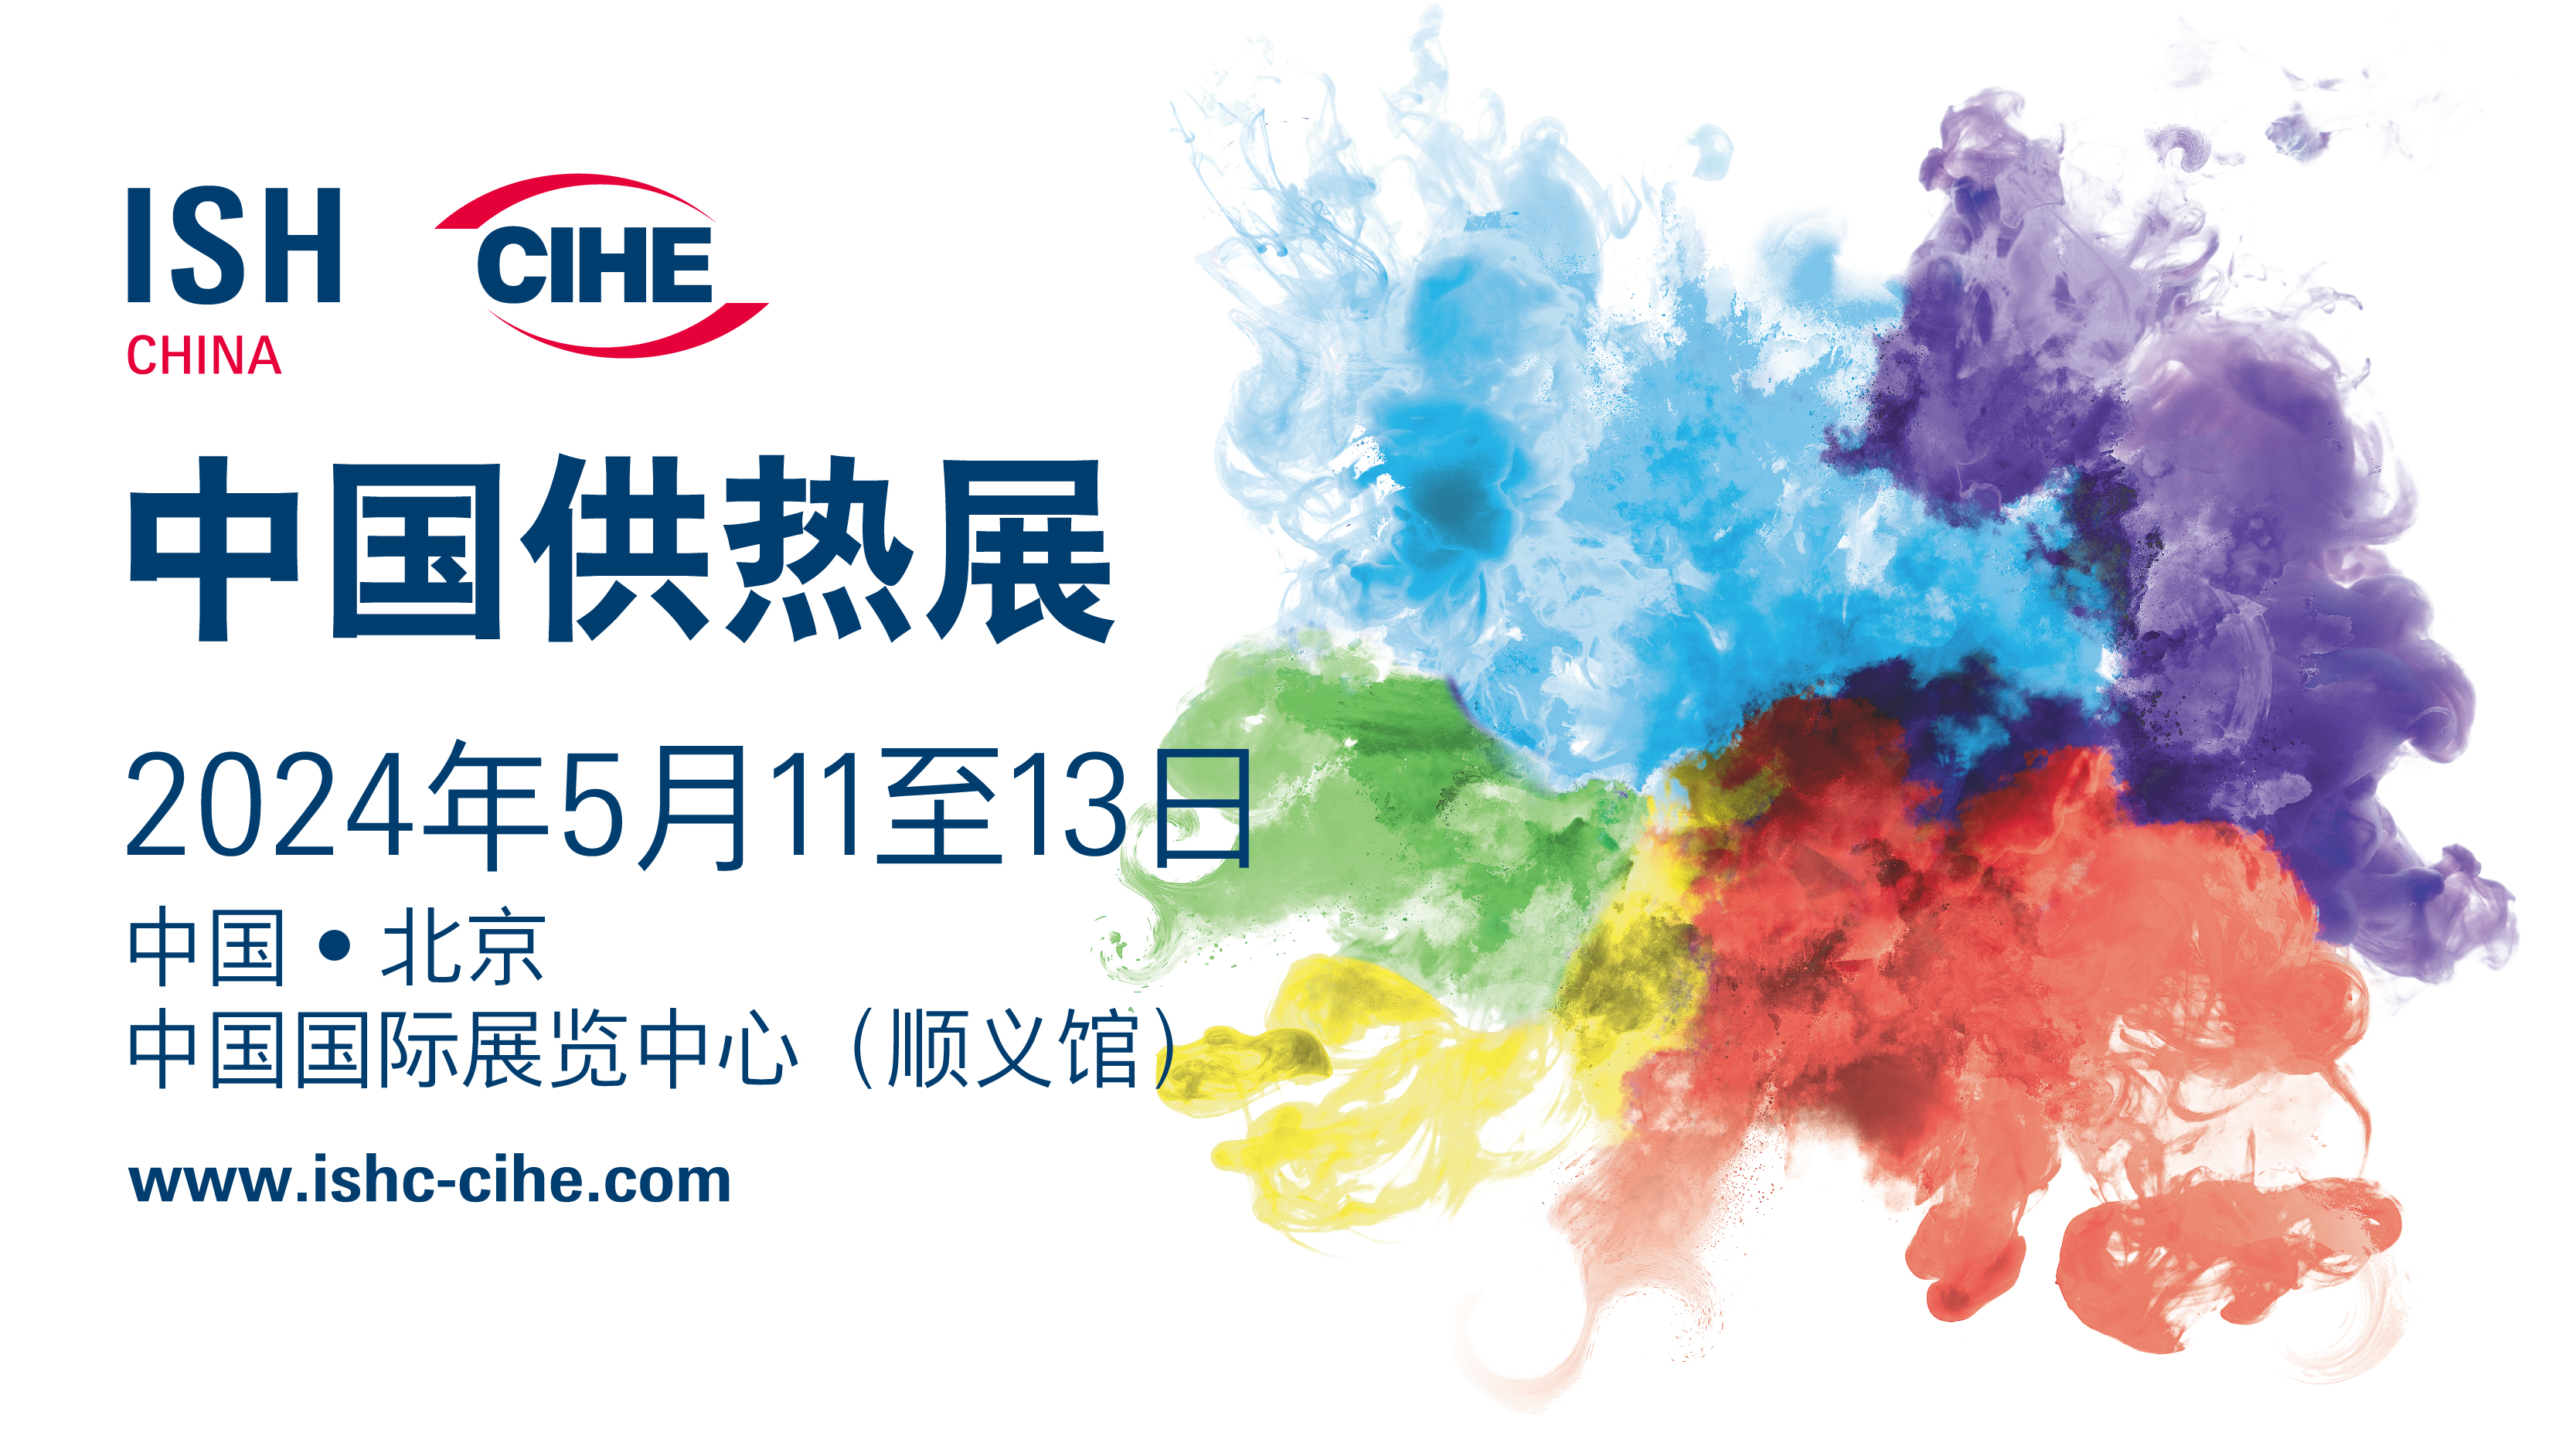 中国国际供热通风空调、卫浴及舒适家居系统展览会 (ISH China & CIHE)